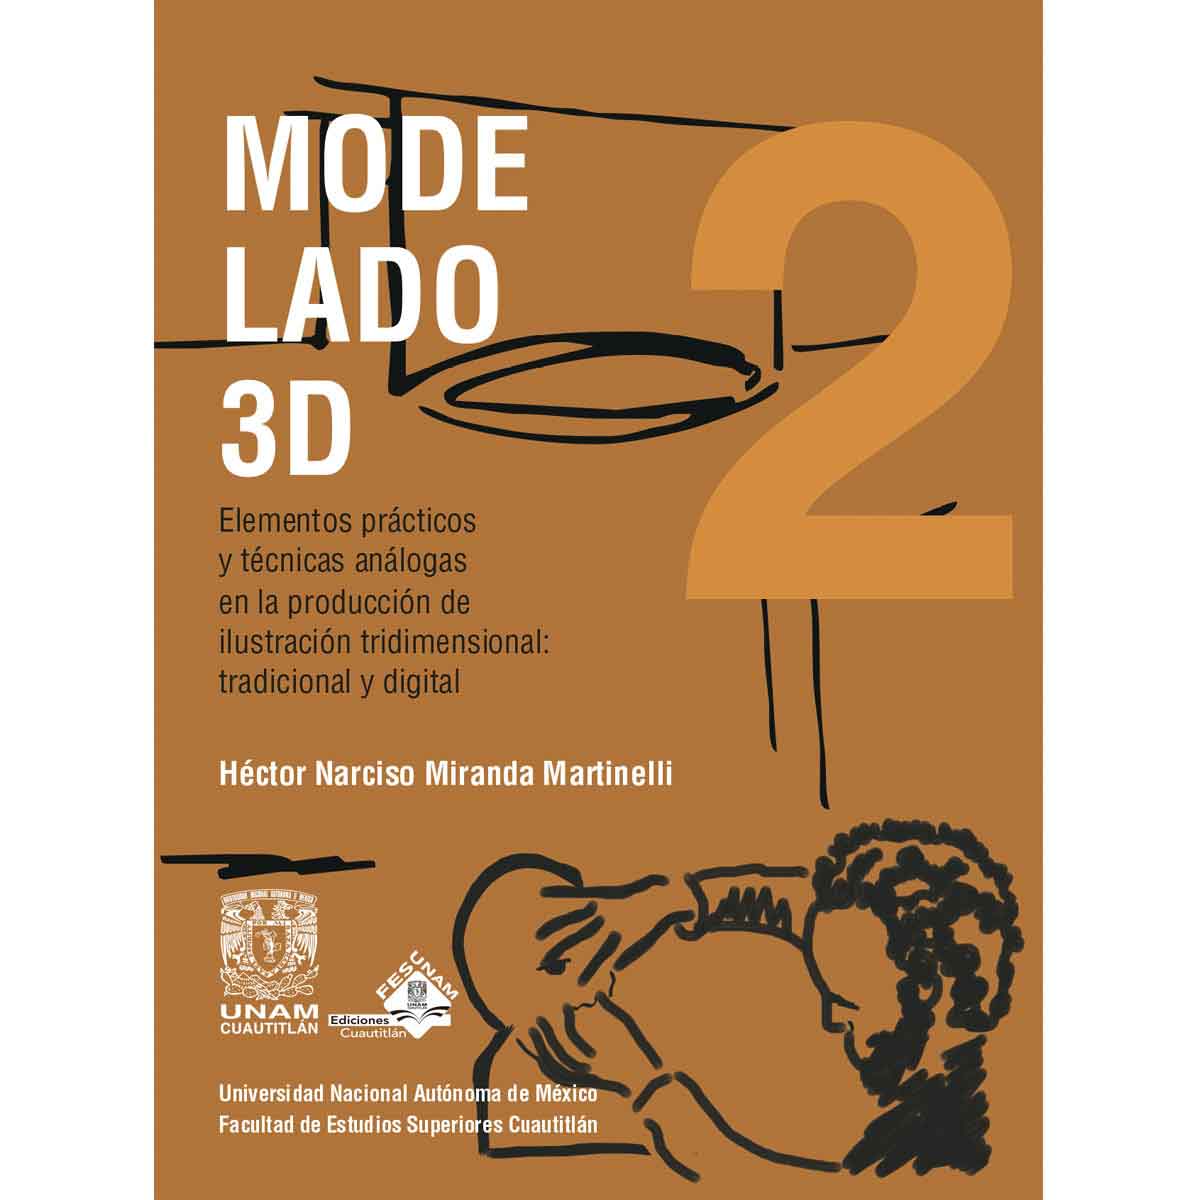 MODELADO 3D. ELEMENTOS PRÁCTICOS Y TÉCNICAS ANÁLOGAS EN LA PRODUCCIÓN DE ILUSTRACIÓN TRIDIMENSIONAL: TRADICIONAL Y DIGITAL